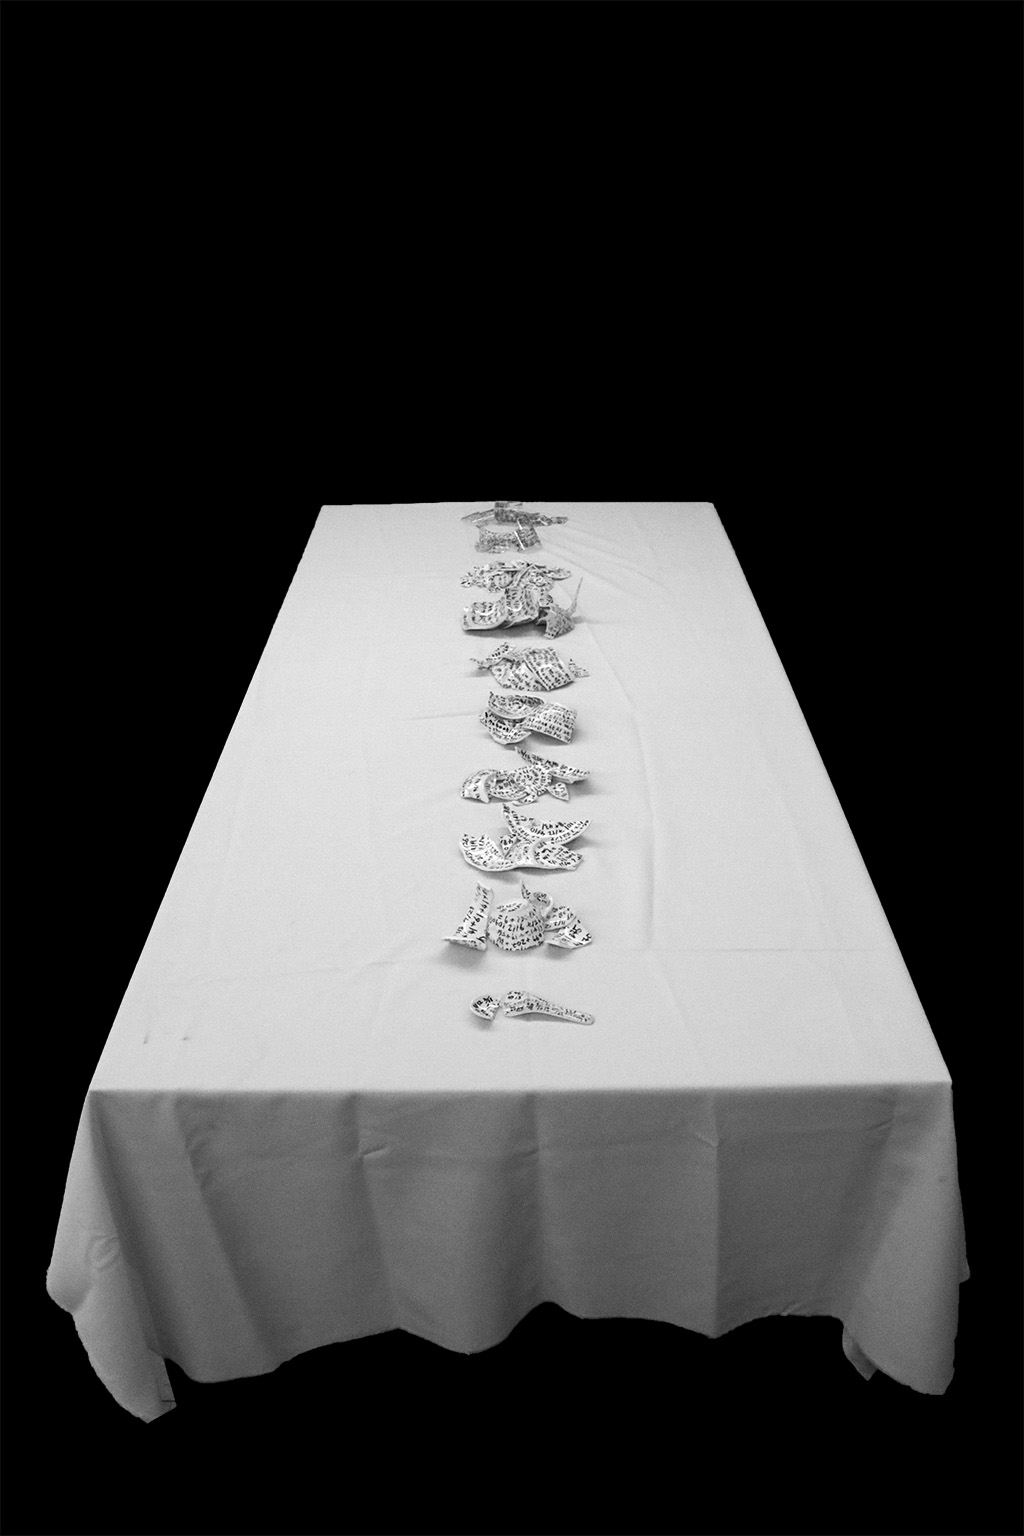 飯桌，黃毓童，陶瓷、布、桌子及行為（攝影記錄），尺寸可變，2020